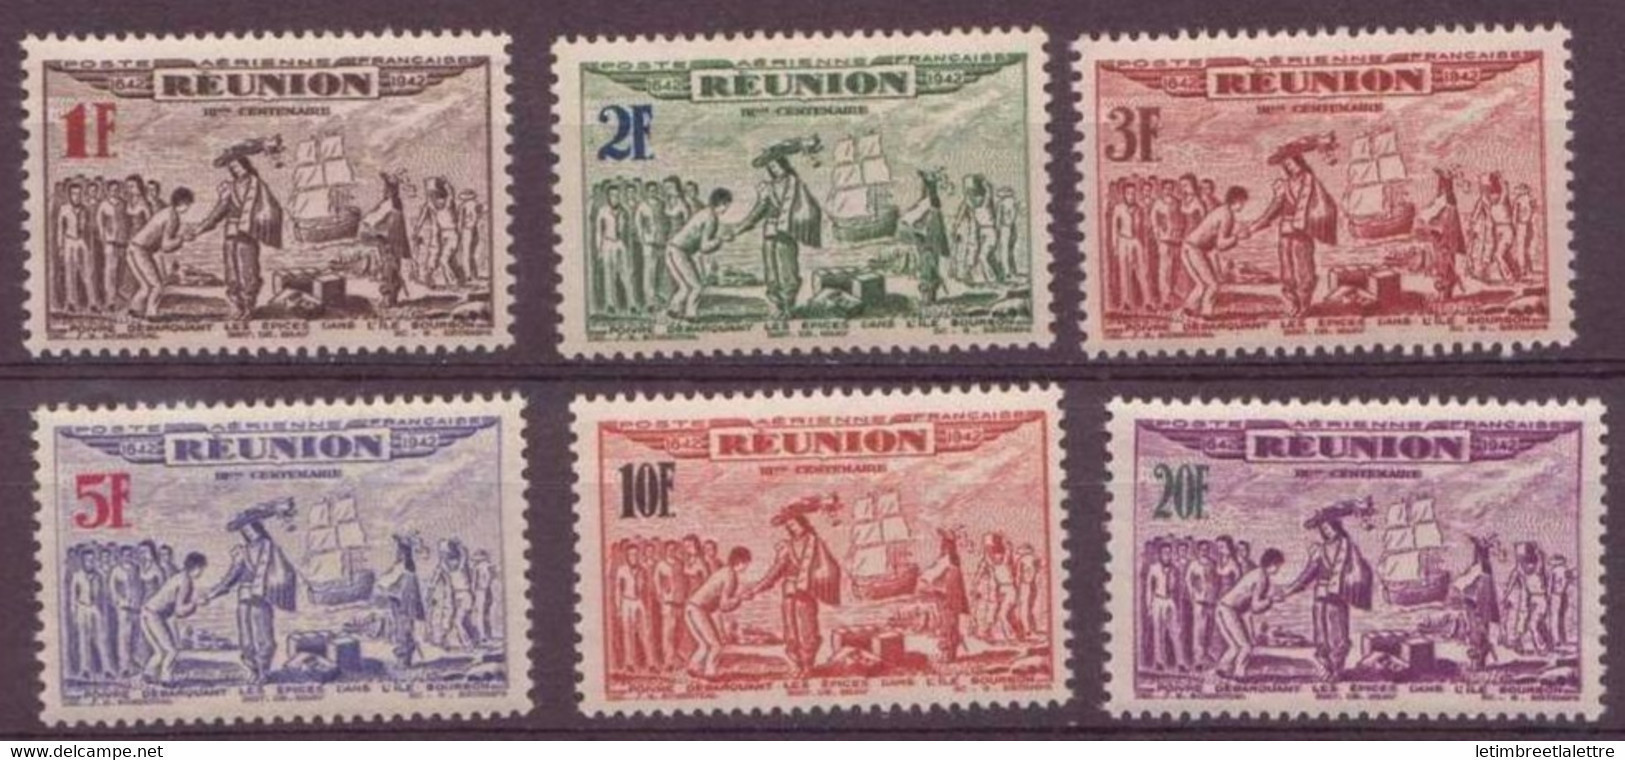 Réunion - Poste Aérienne - YT N° 18 à 23 ** - Neuf Sans Charnière - 1943 - Poste Aérienne